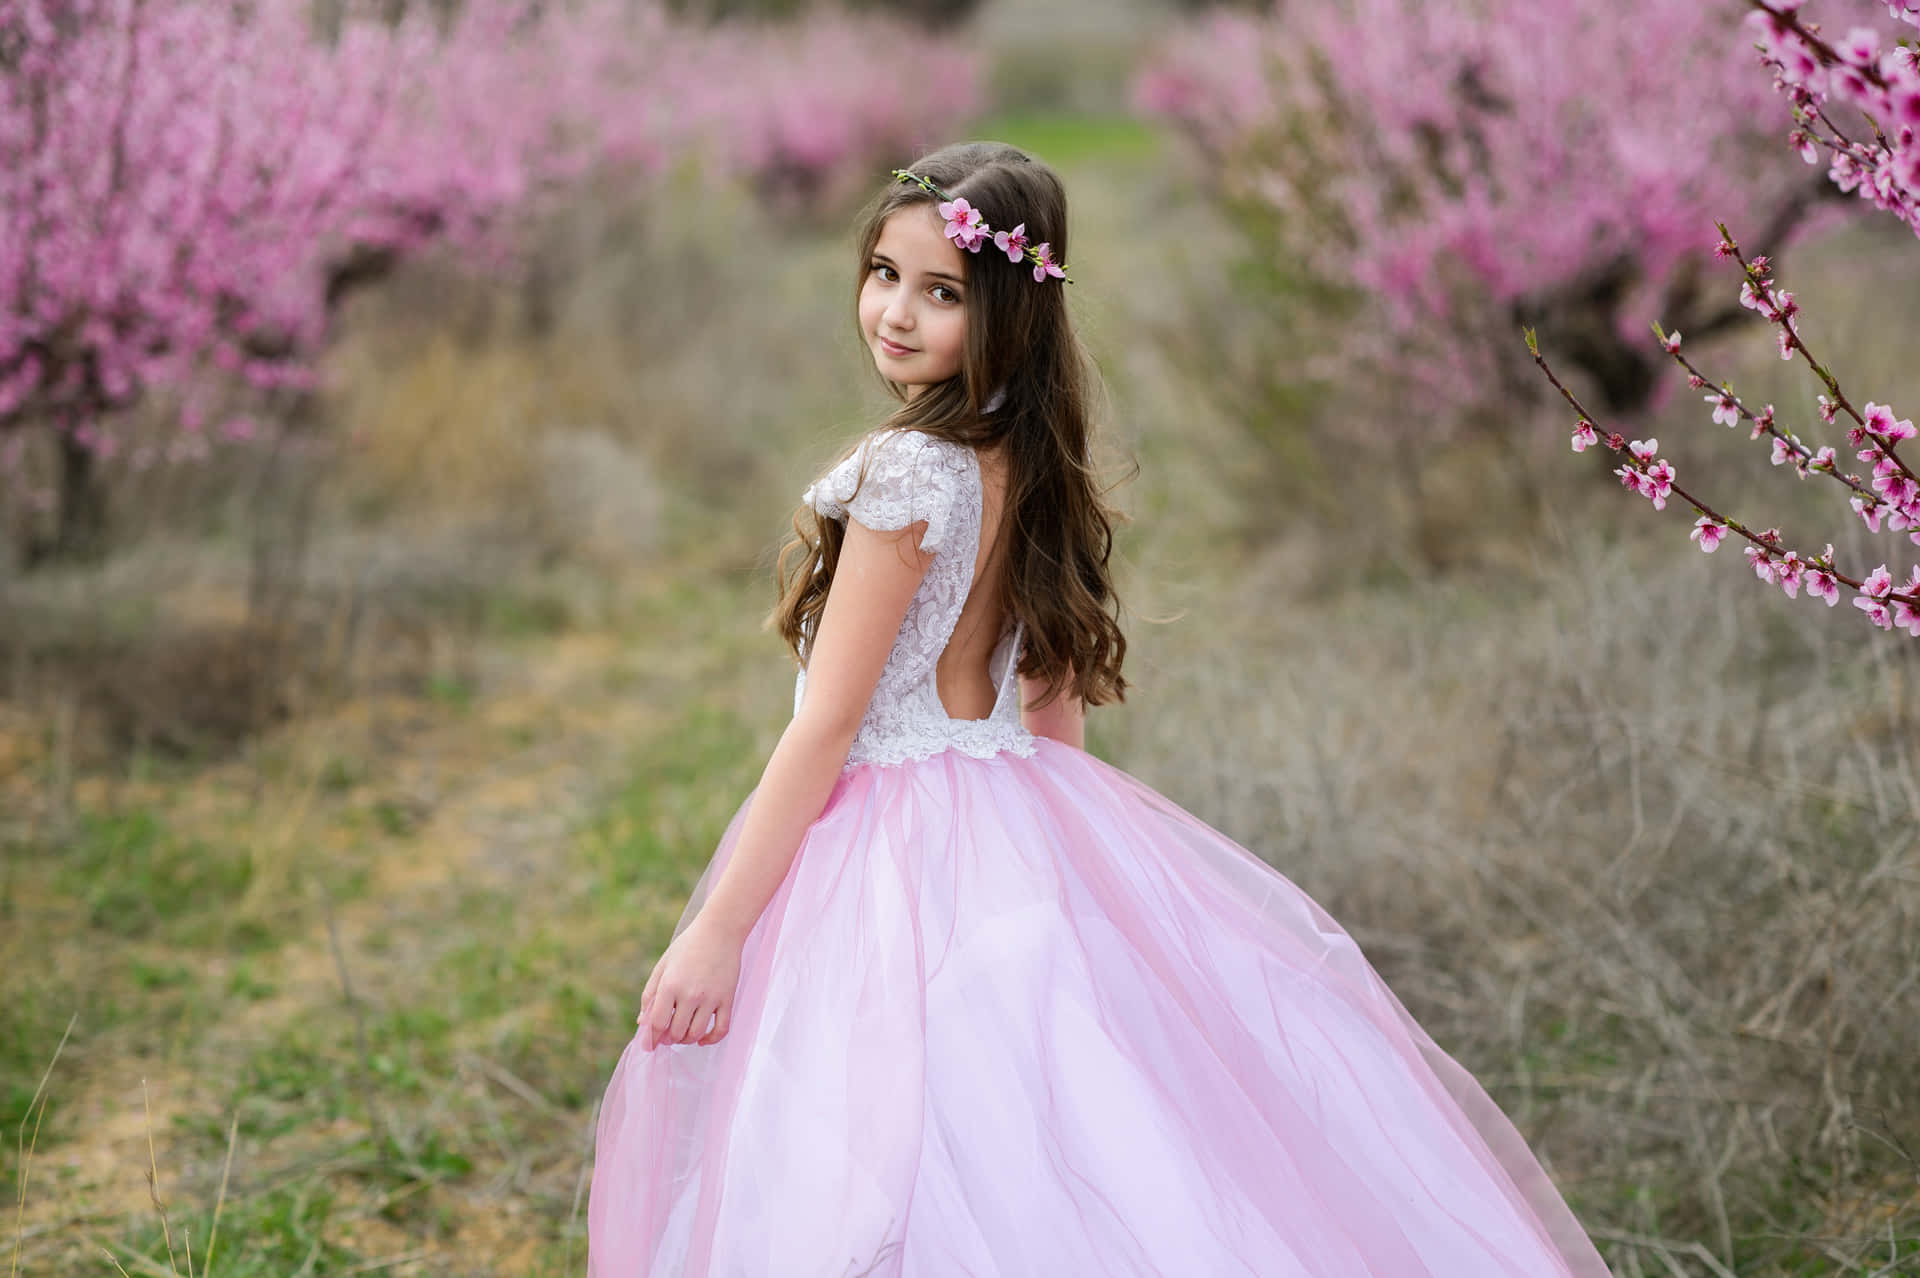 Unachica En Un Vestido De Tul Rosa Está Parada En Un Campo De Flores En Flor Fondo de pantalla